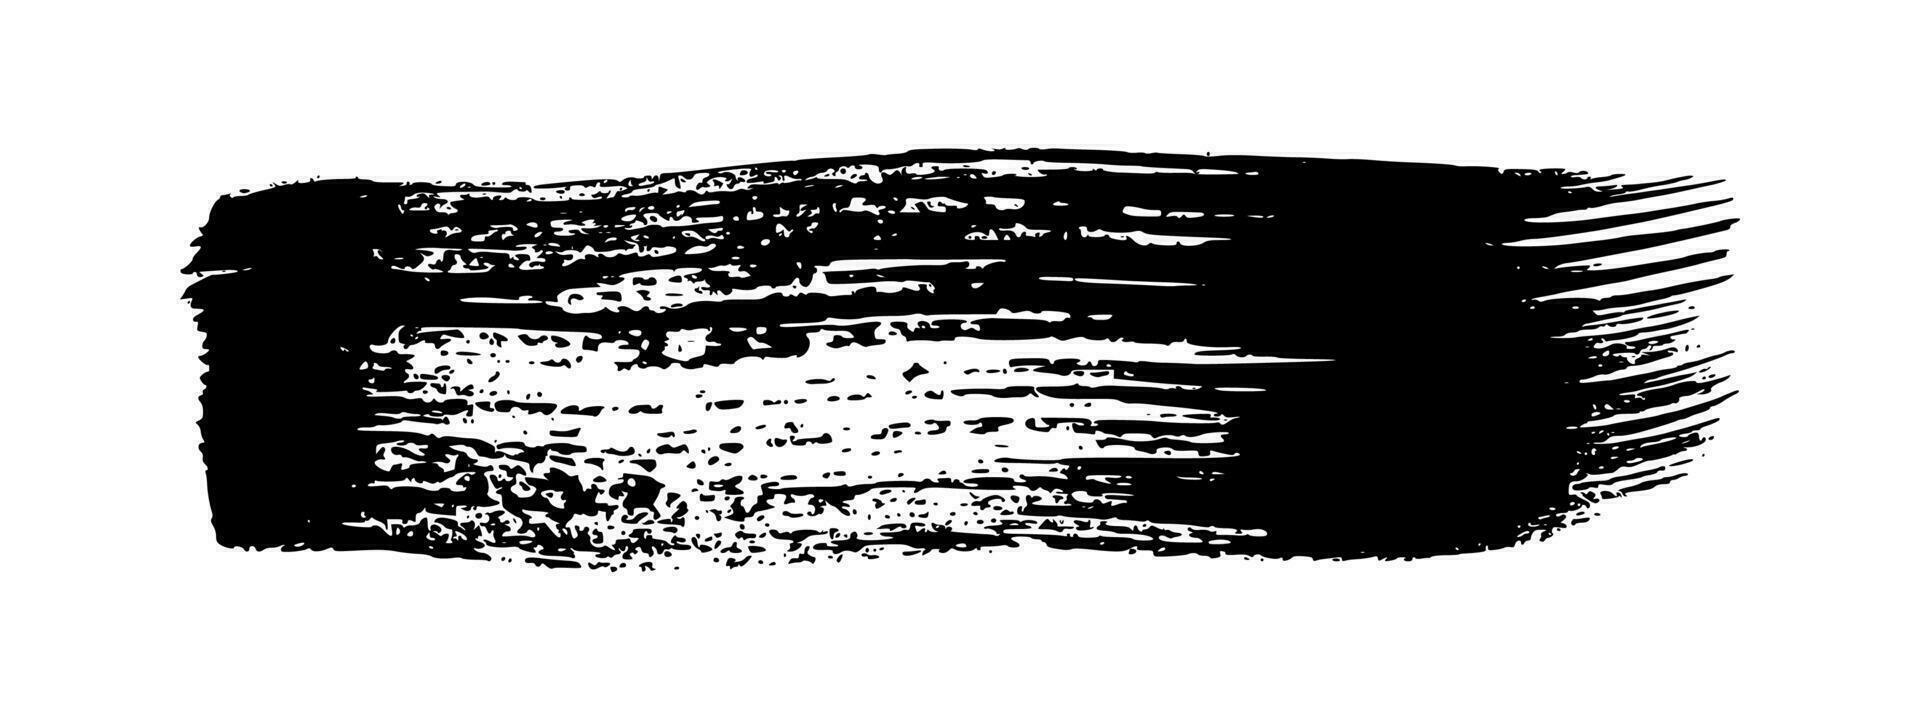 svart grunge borsta stroke. målad bläck rand. bläck fläck isolerat på vit bakgrund. vektor illustration